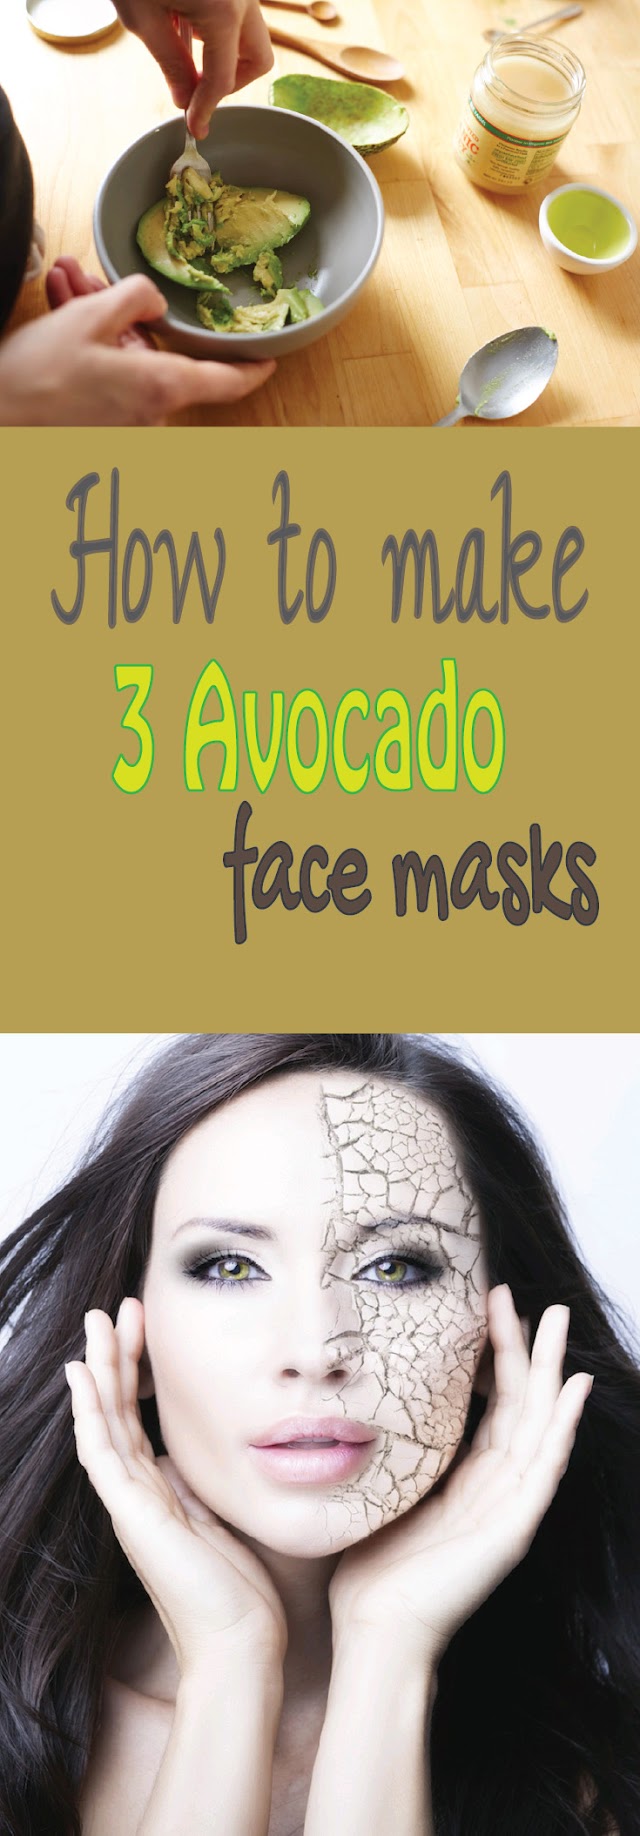 How to make 3 avocado face masks